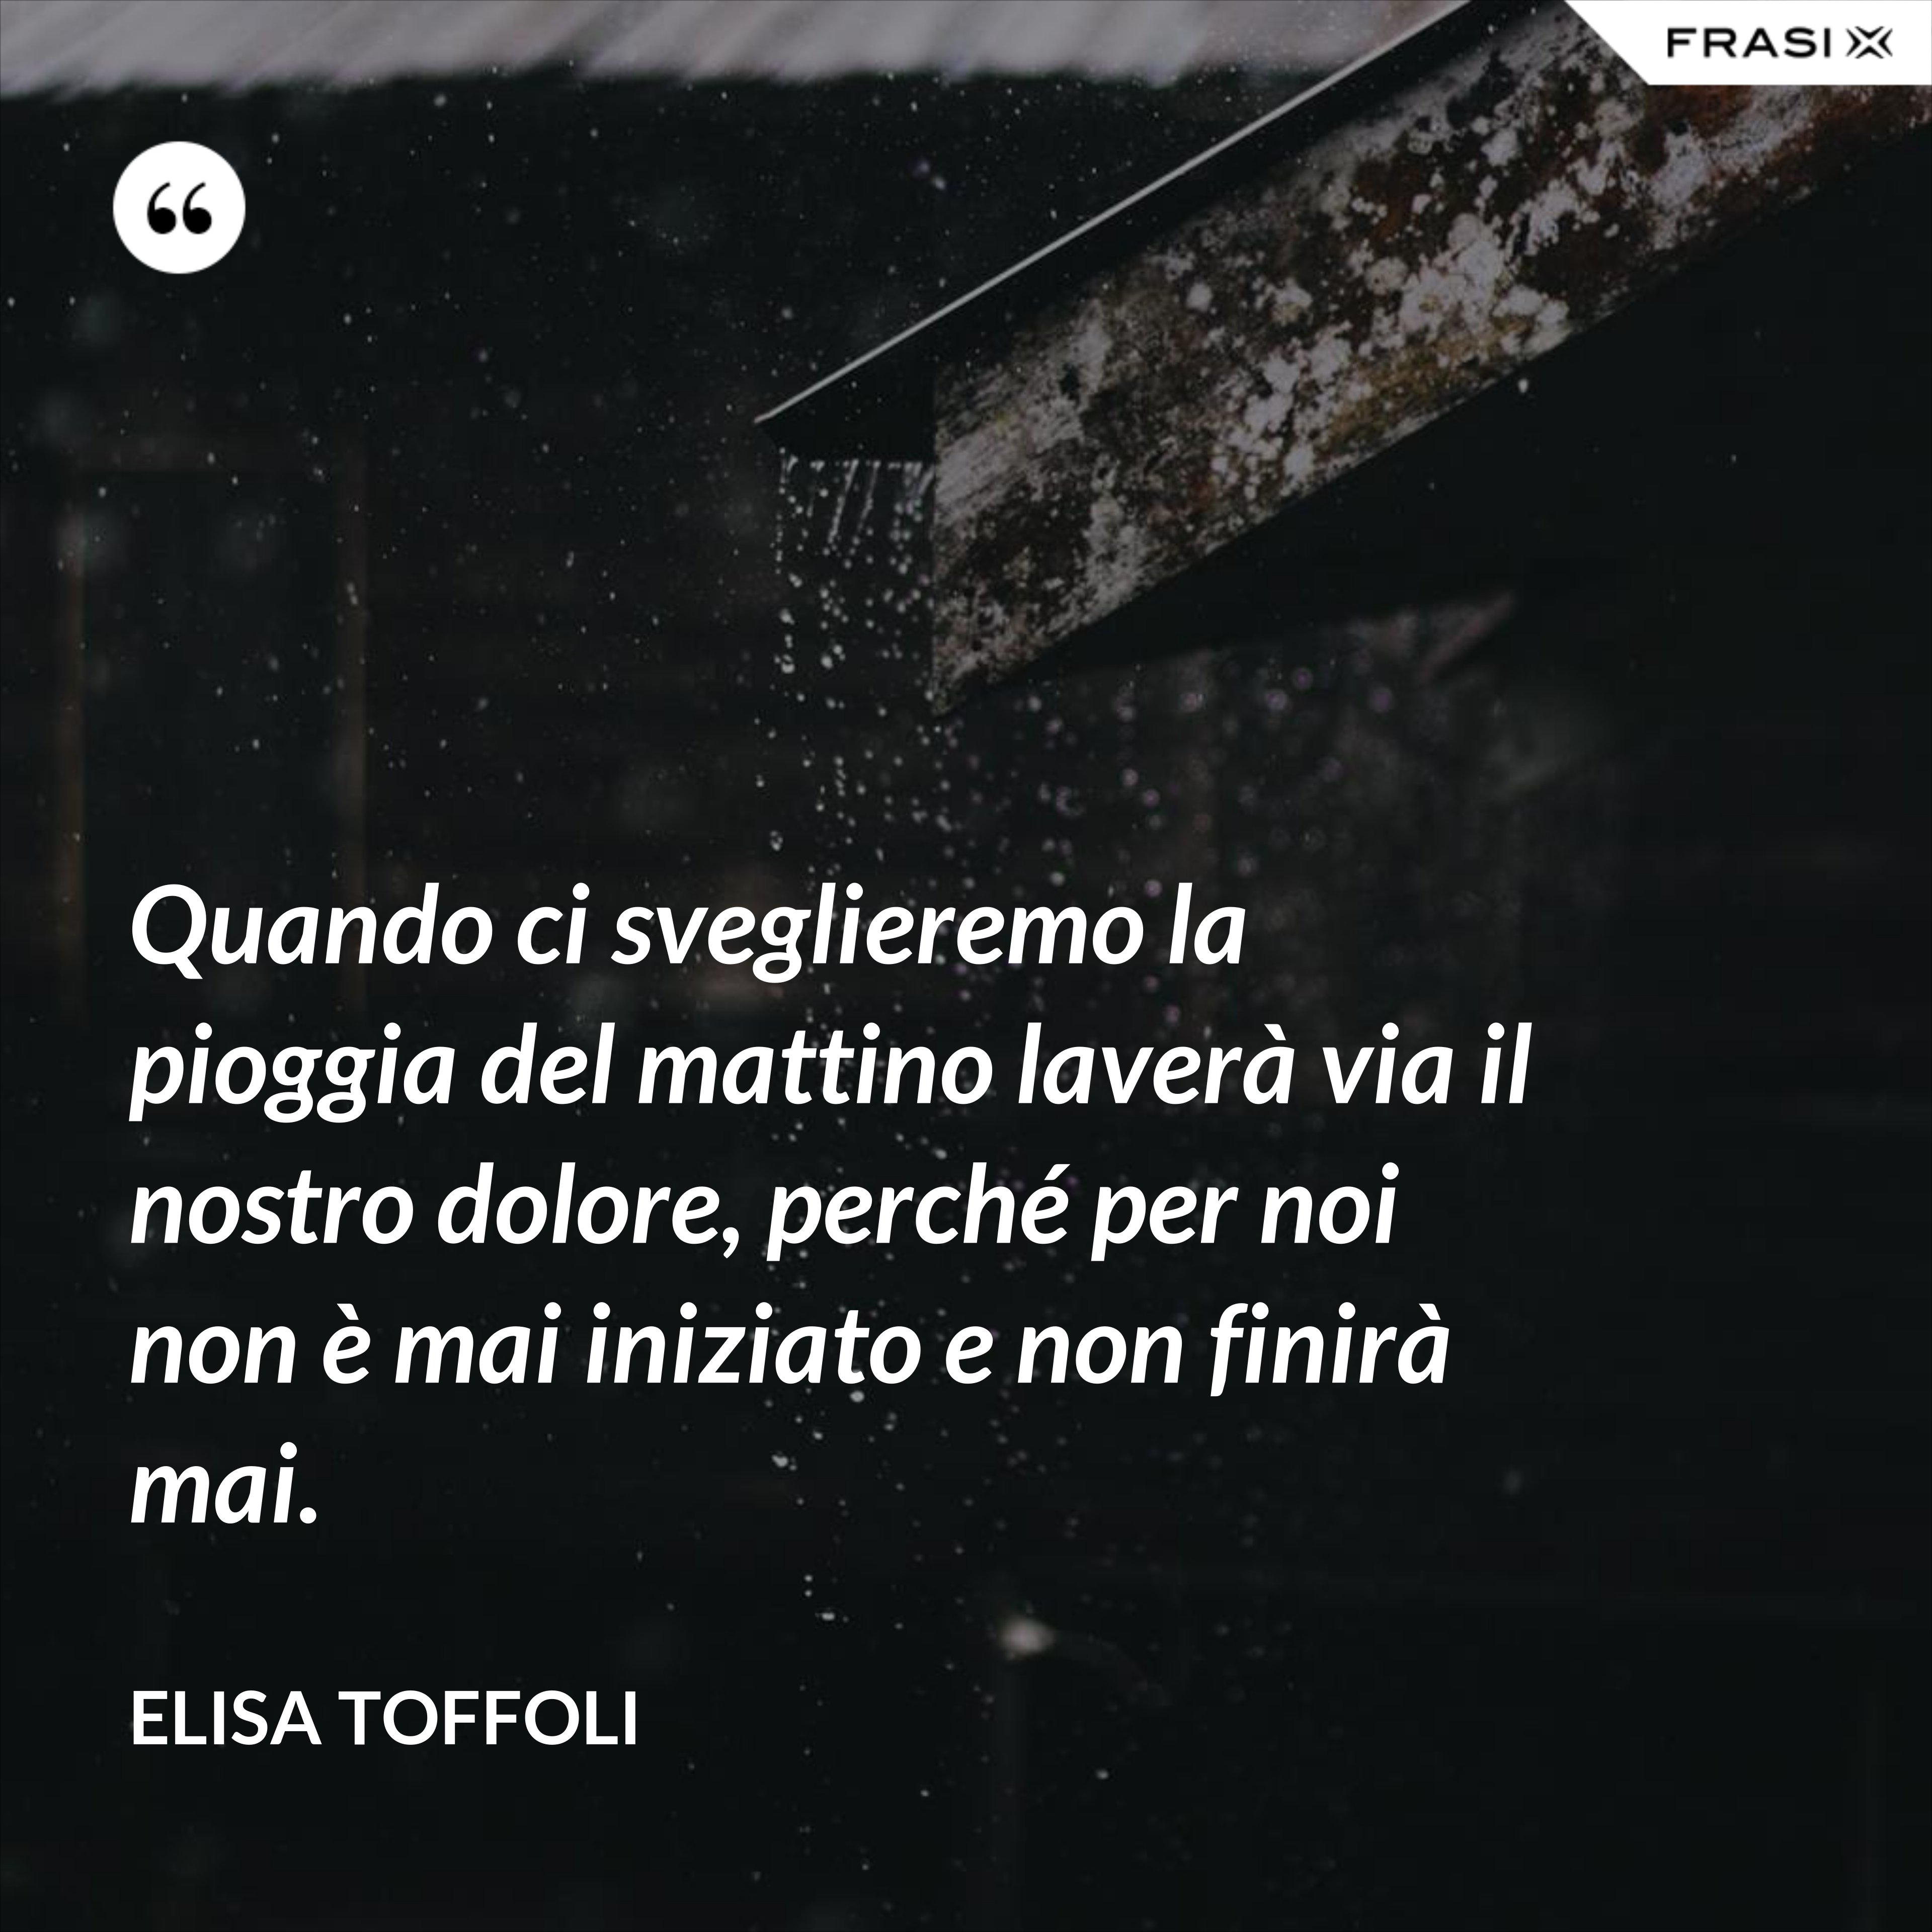 Quando ci sveglieremo la pioggia del mattino laverà via il nostro dolore, perché per noi non è mai iniziato e non finirà mai. - Elisa Toffoli